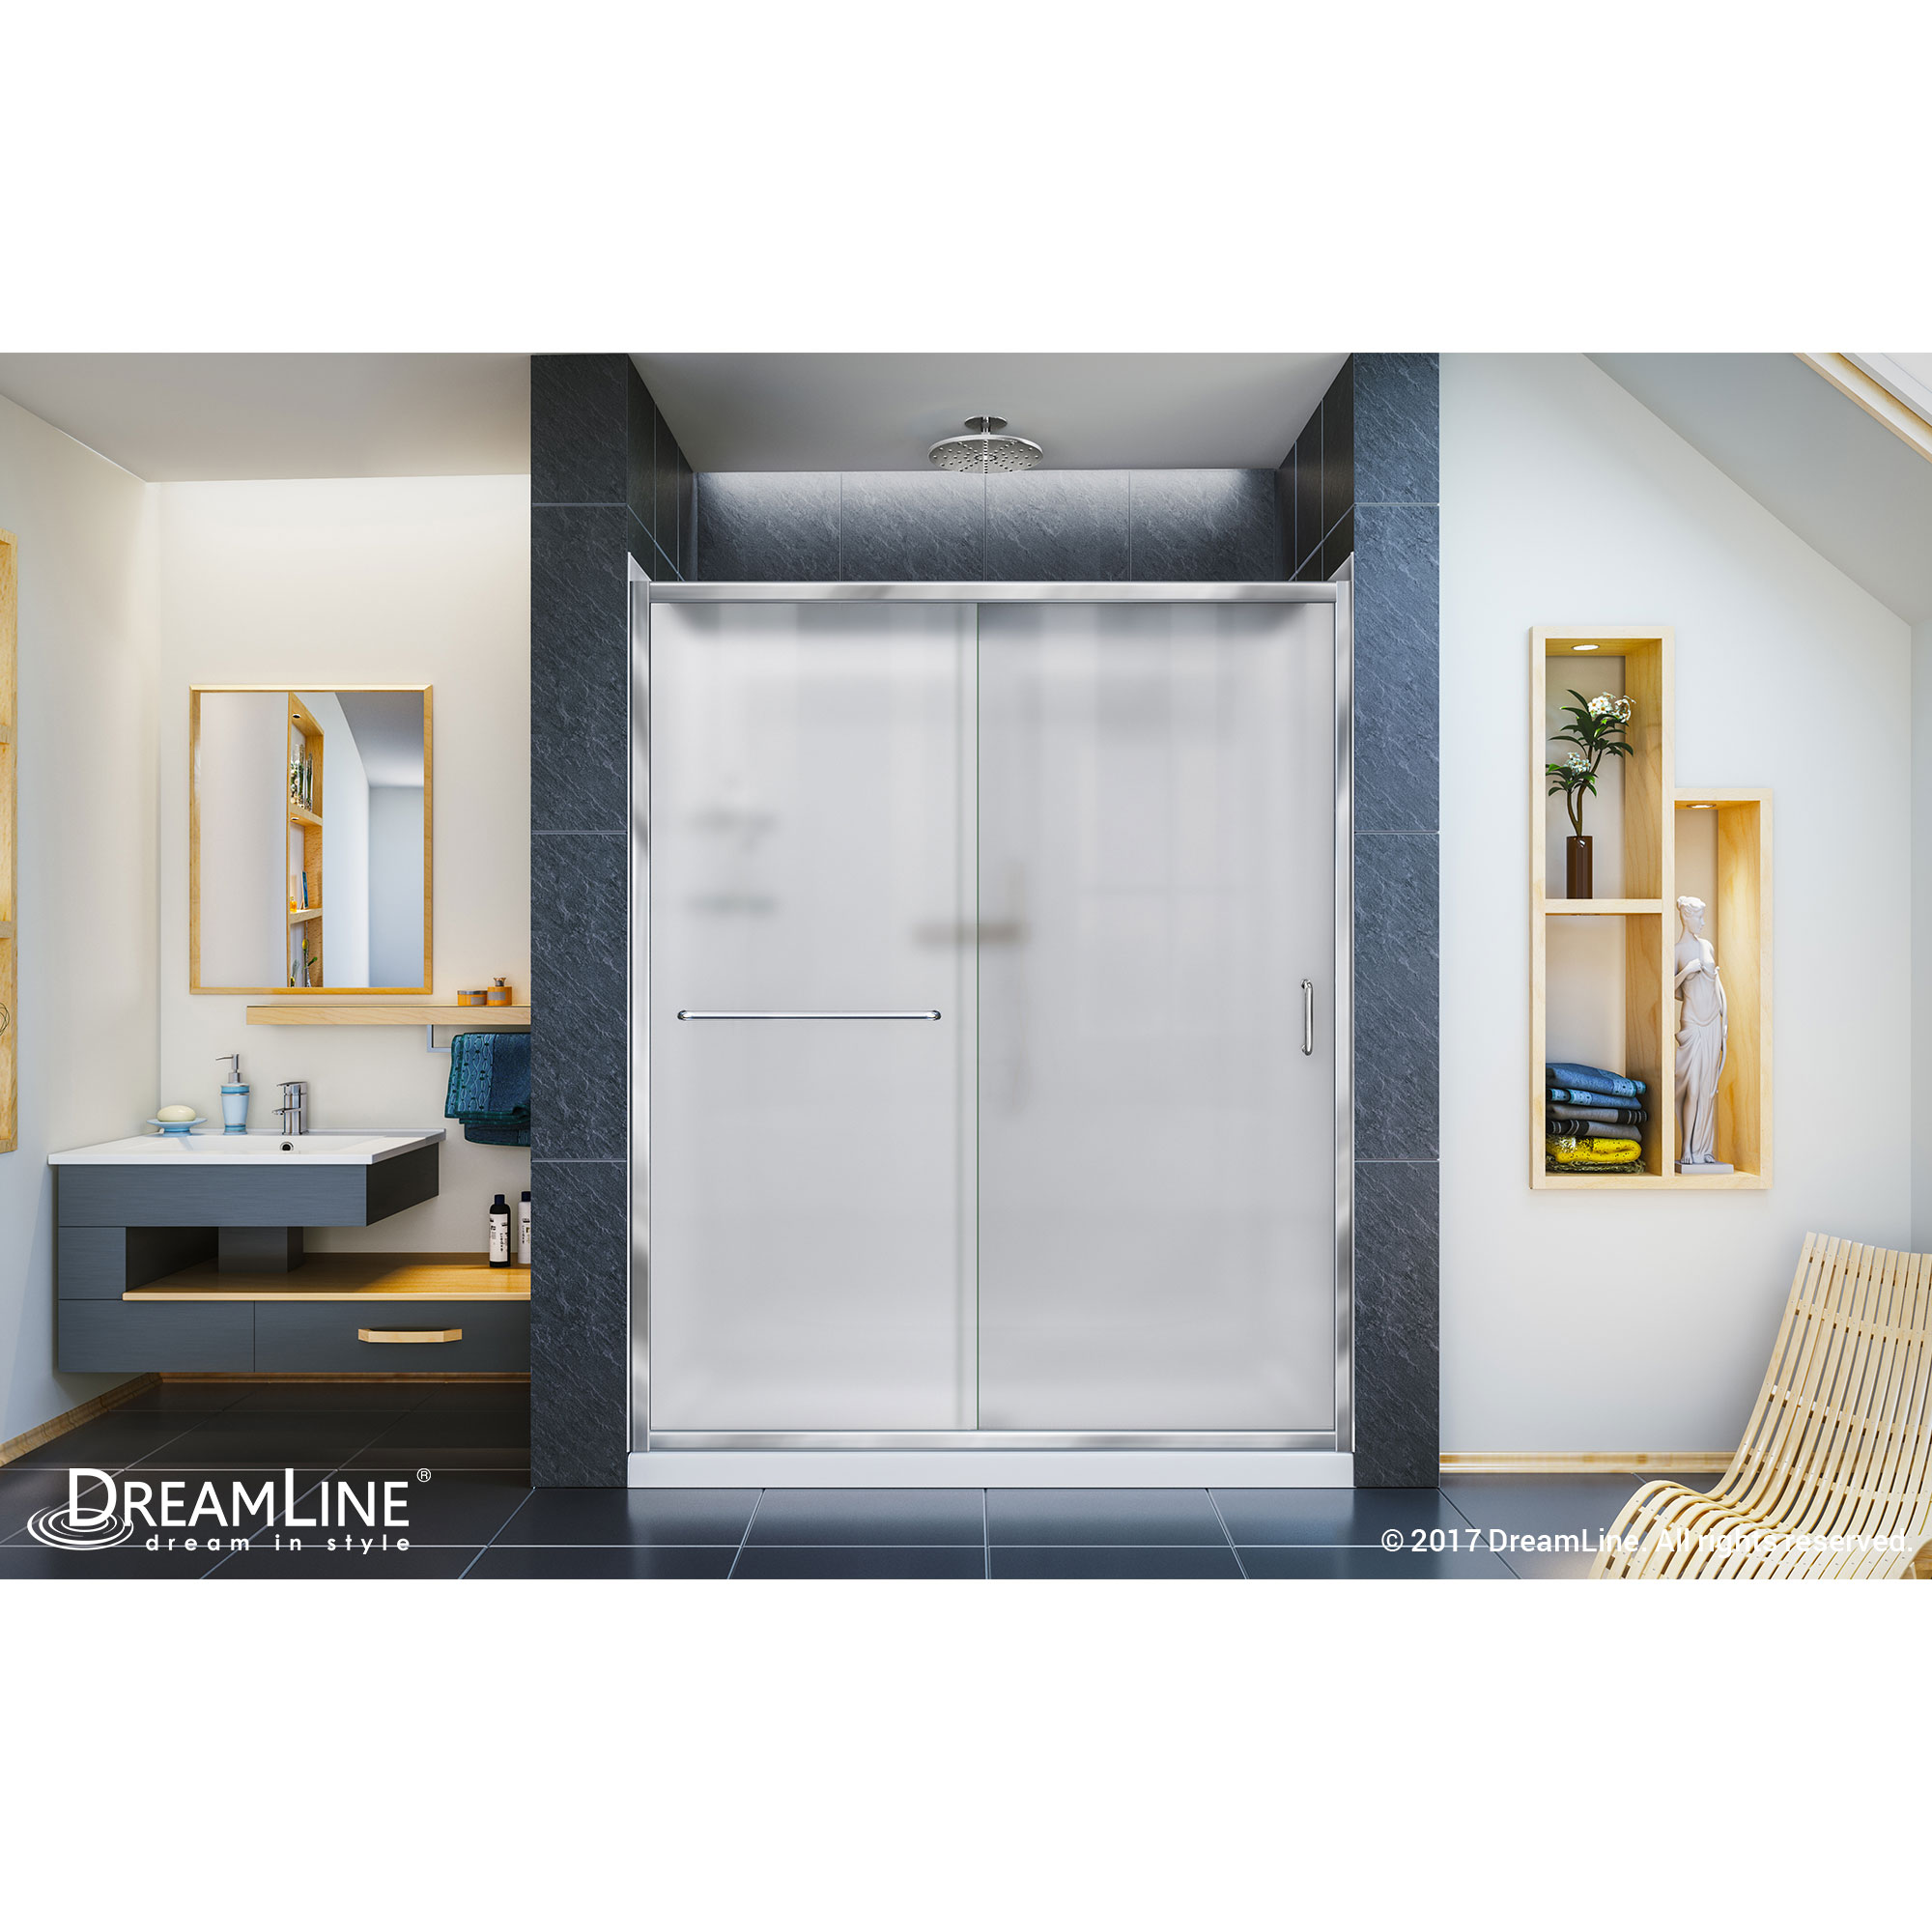 Infinity-Z Frameless Sliding Shower Door, 30" by 60" Shower Base & QWALL-5 Shower Backwall